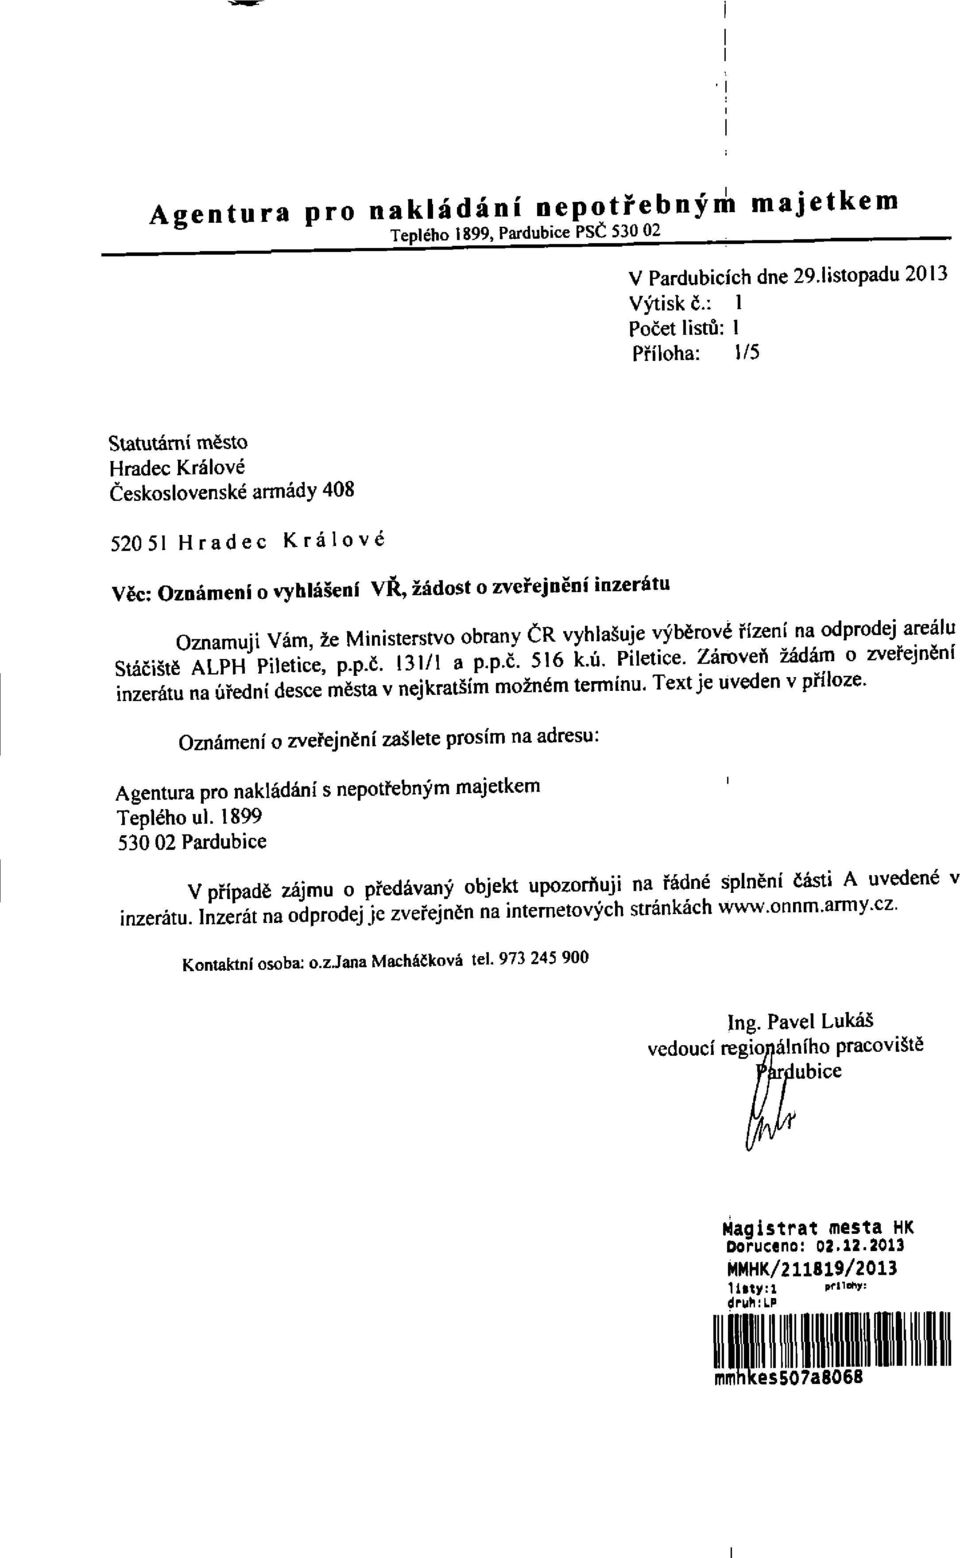 Ministerstvo obrany ČR vyhlašuje výběrové řízení na odprodej areálu Stáčiště ALPH Piletice, p.p.č. 131/1 a p.p.č. 516 k.ú. Pilelice.